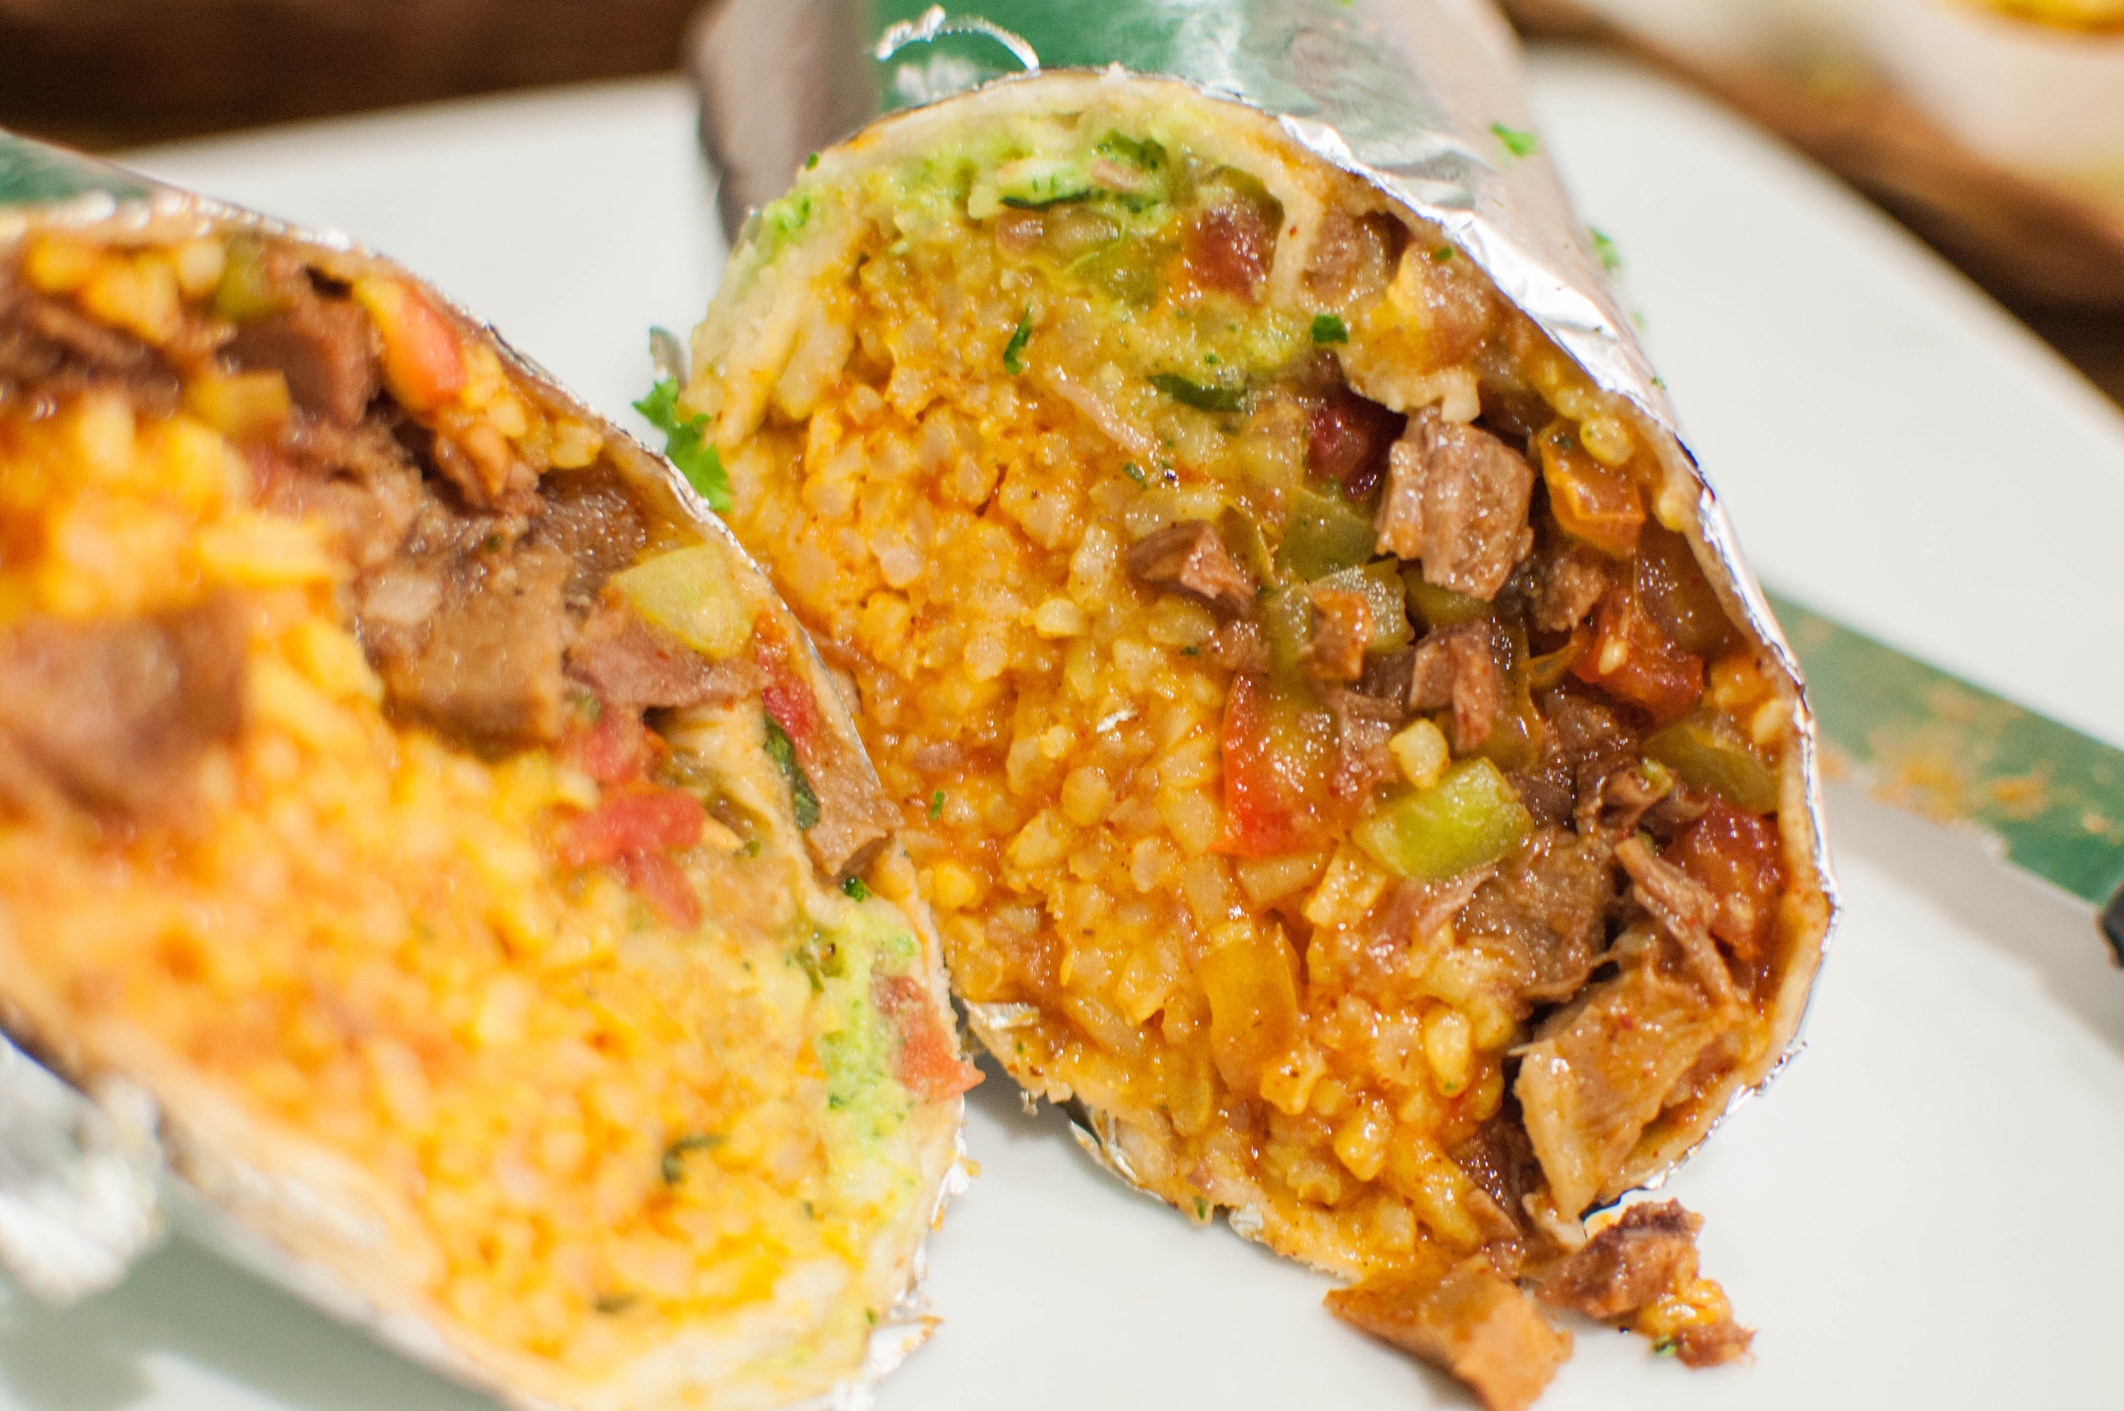 A close-up of a burrito.